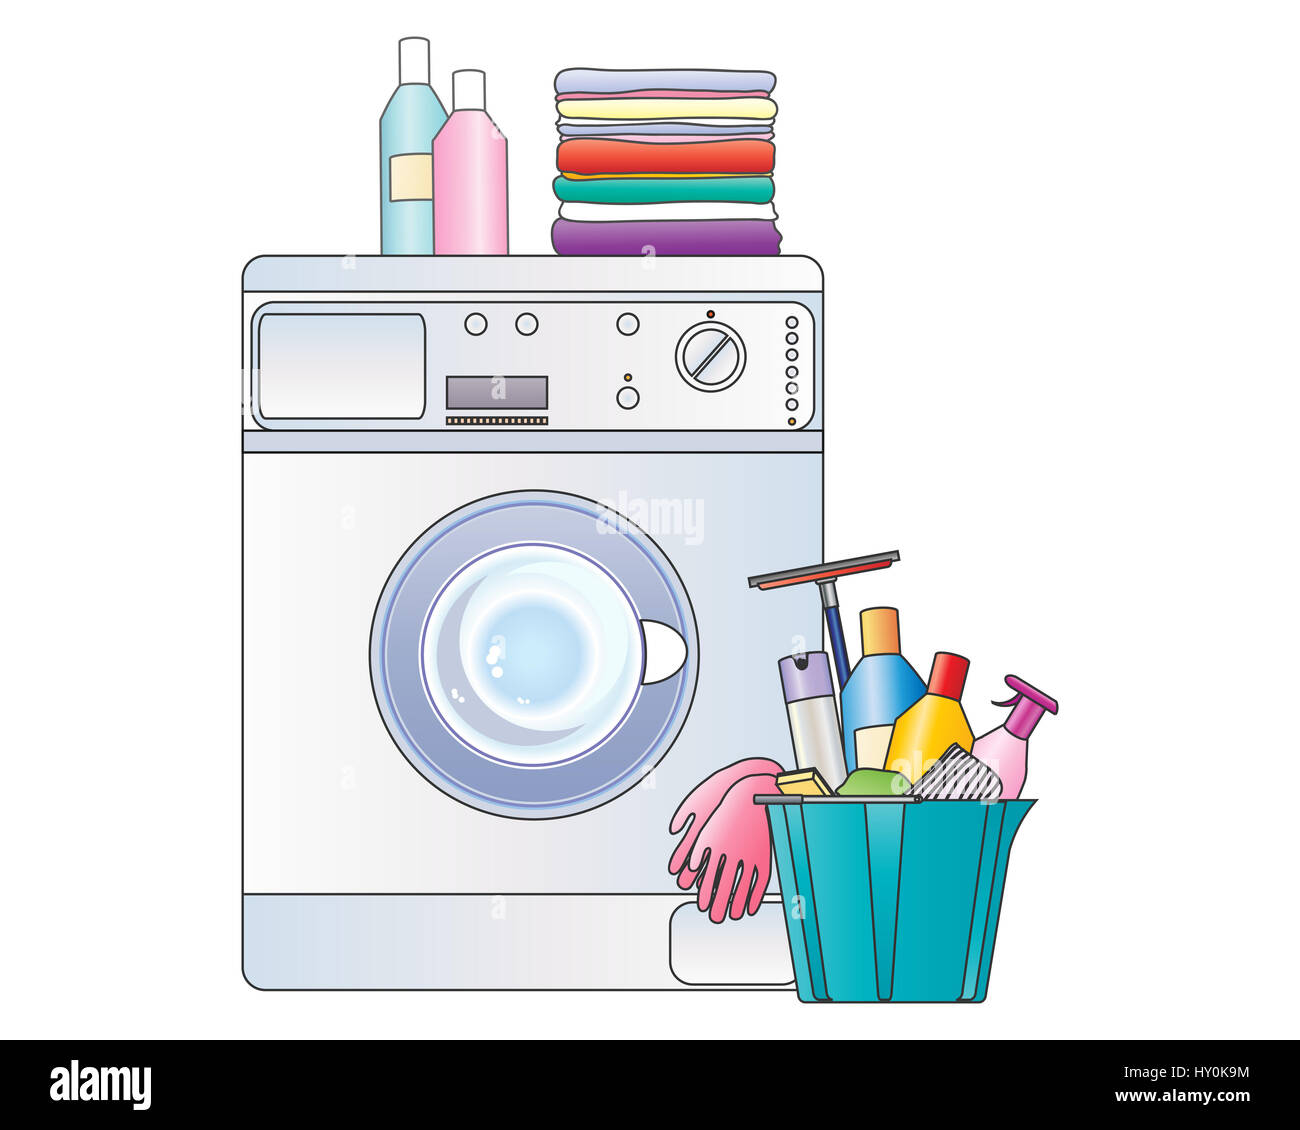 Una illustrazione di articoli per la casa tra cui lavatrice servizio lavanderia e pulizia di primavera la benna su sfondo bianco Foto Stock